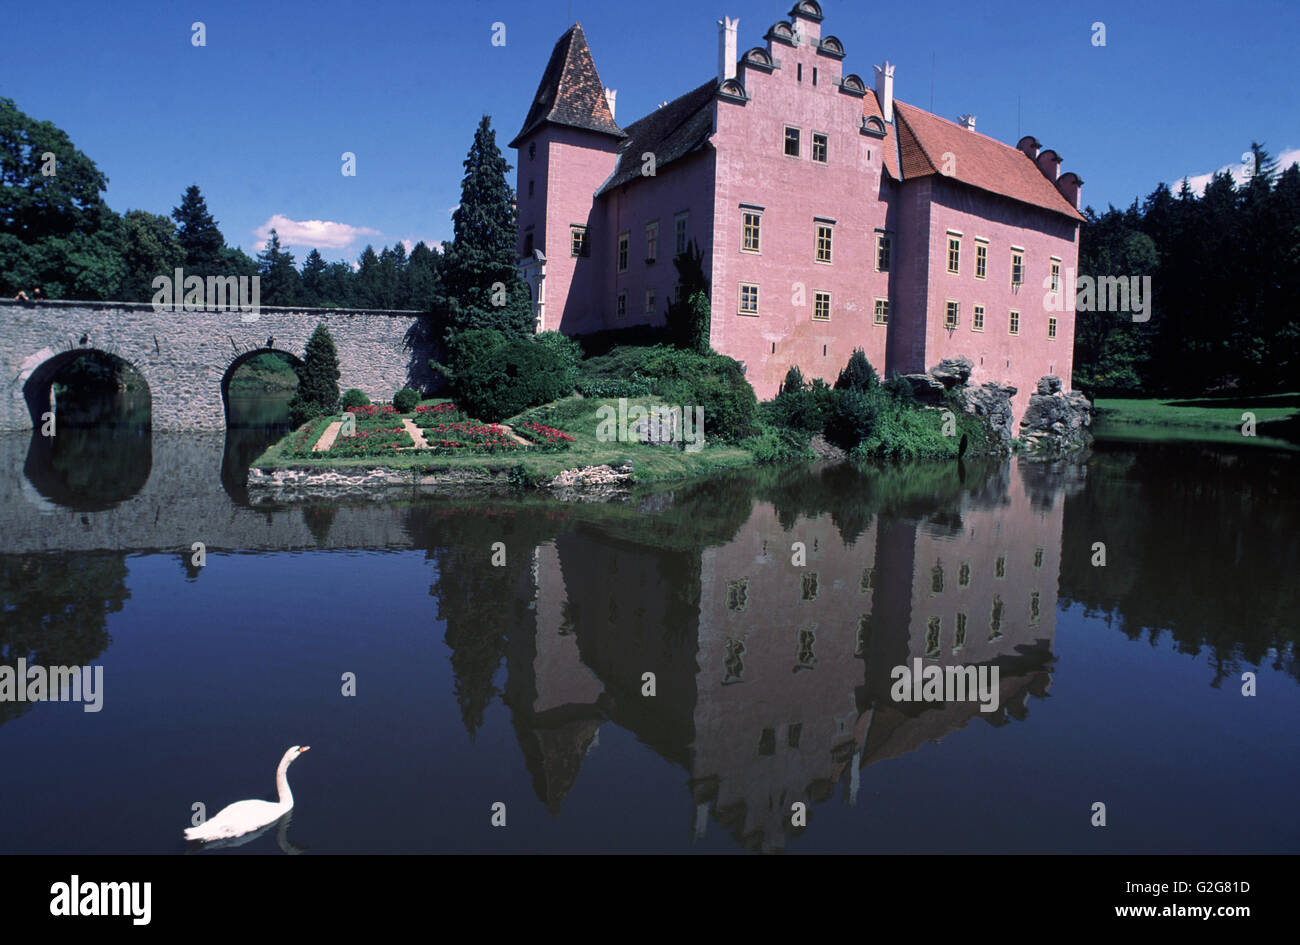 Renaissance Chateau, 'Cervena Lhota,' Czech Republic. Stock Photo